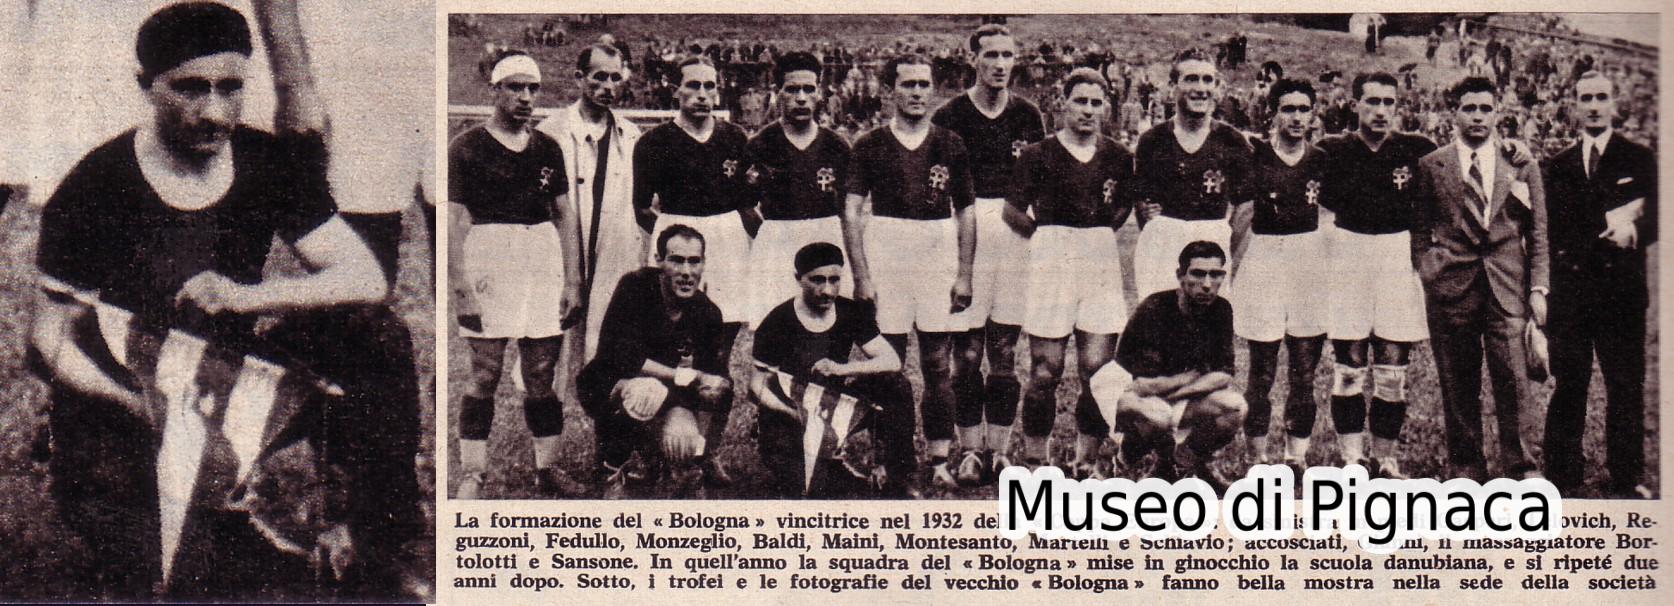 1932 - Il Bologna di Vienna vincitore della Coppa Europa